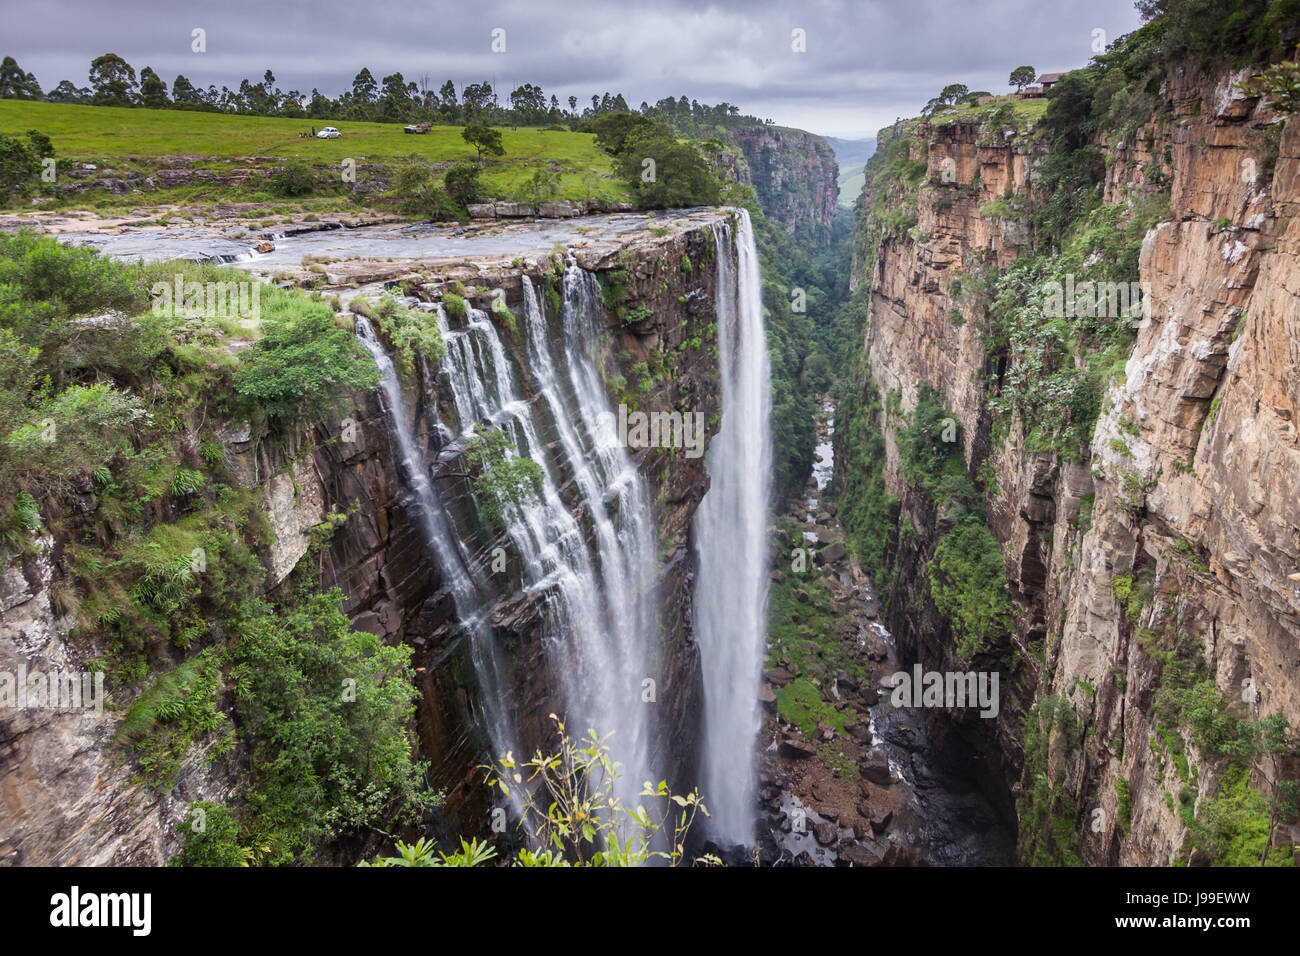 Herrliche Magwa Wasserfälle fallen 100 m in einem Slotcanyon, in der Nähe von Mbotyi, Wild Coast, Transkei, Südafrika Stockfoto